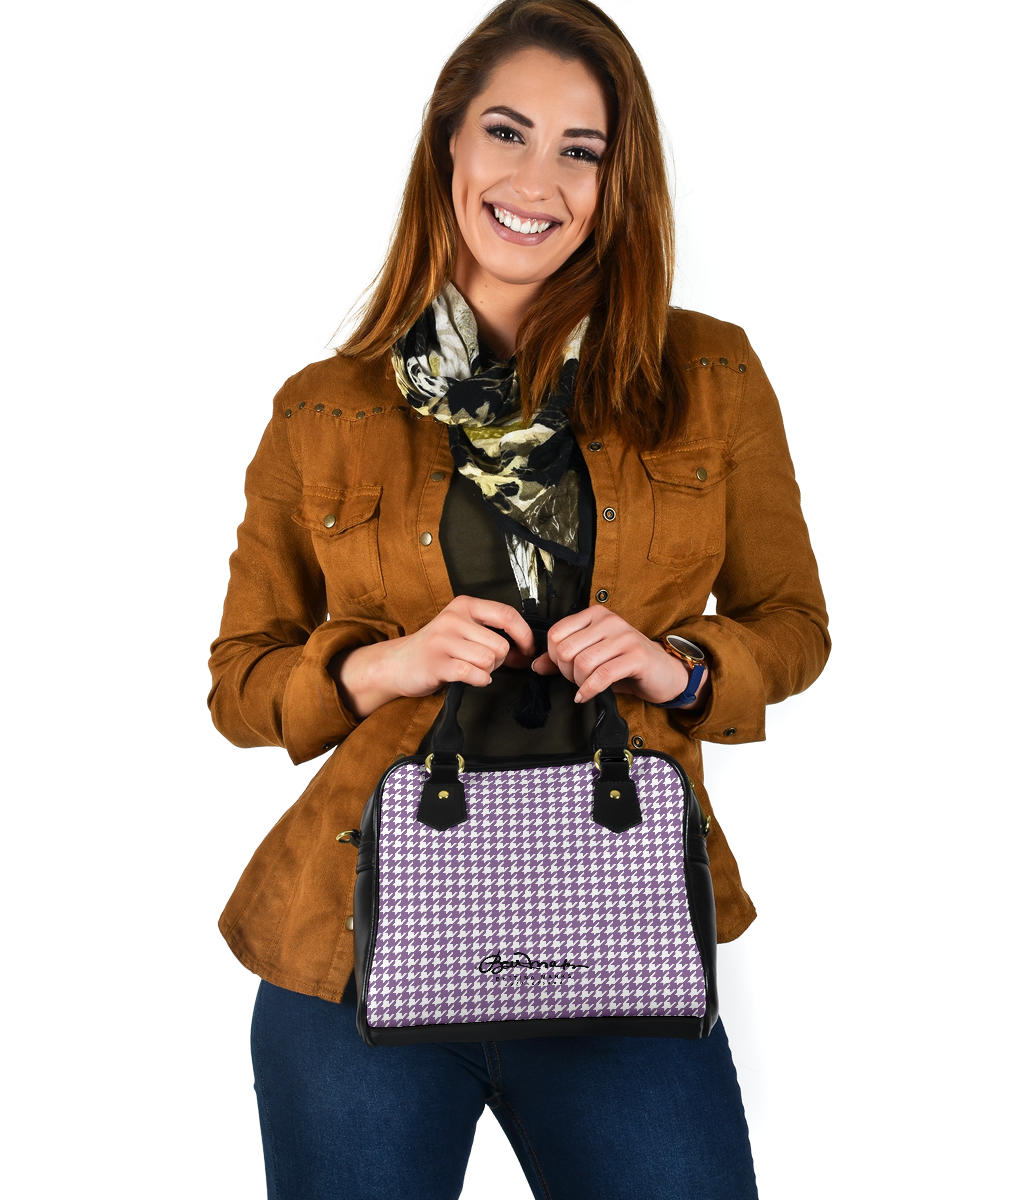 Lilac Houndstooth Hand Bag w Shoulder Strap